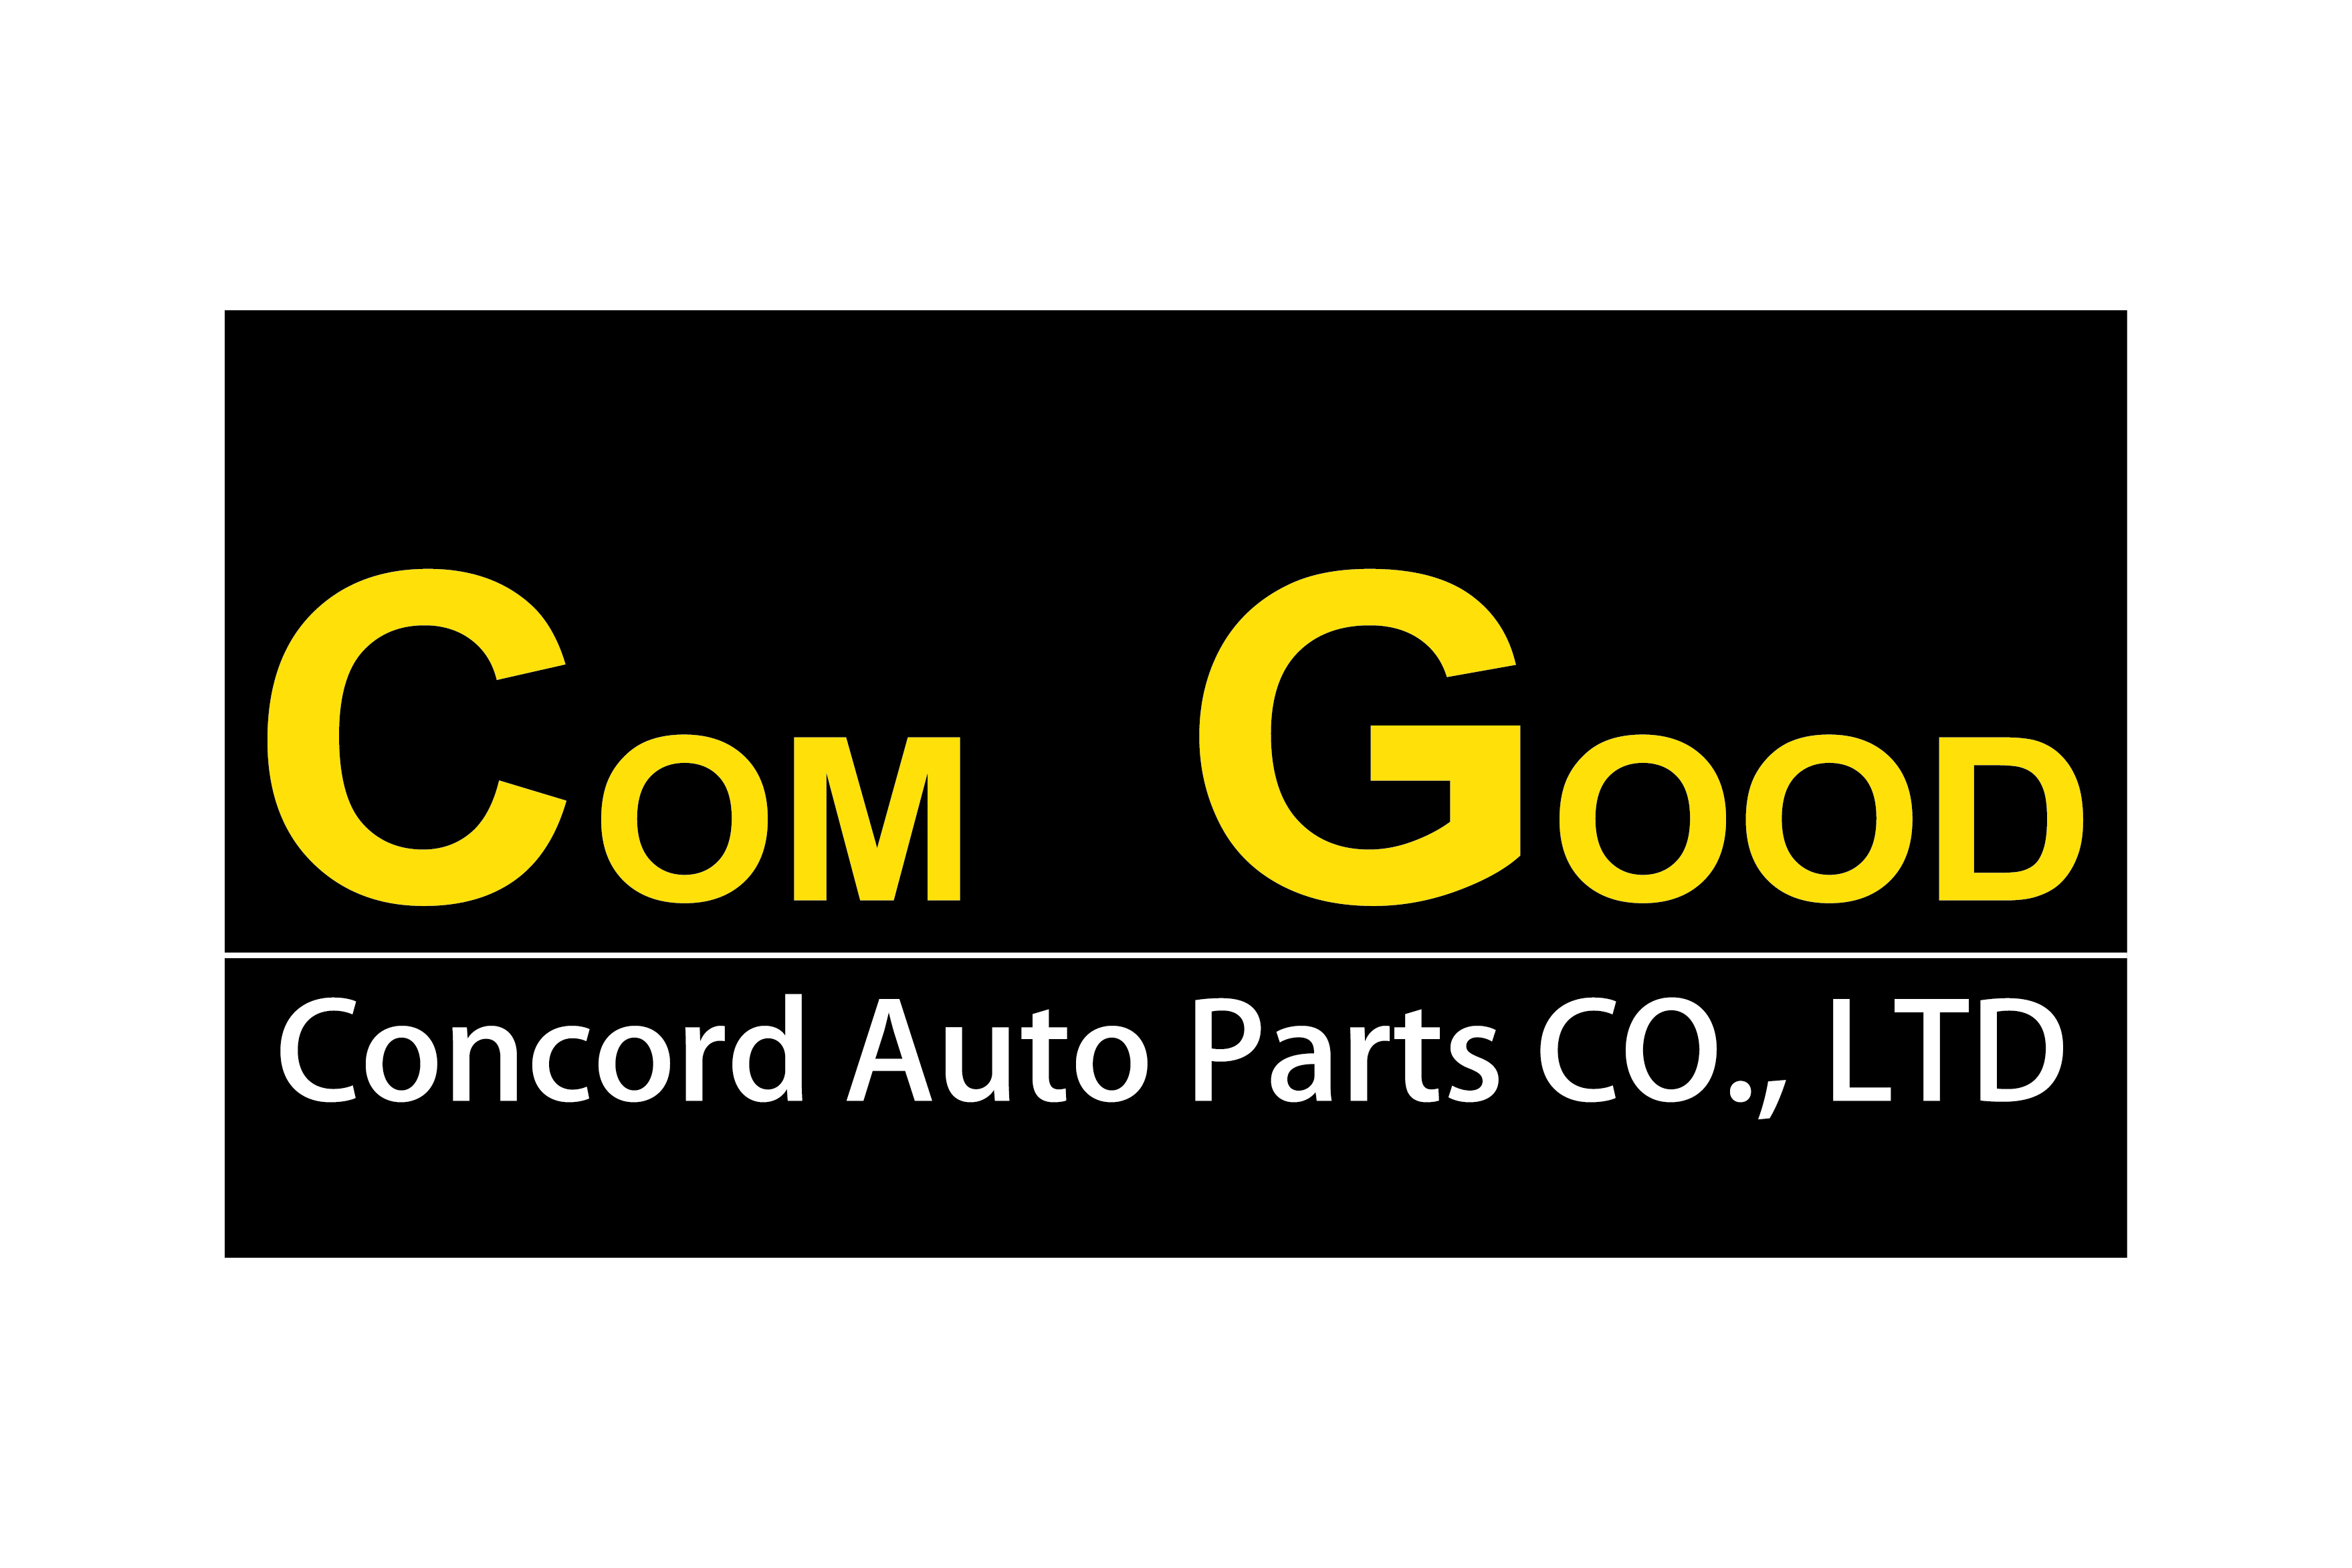 Concord Auto Parts 4x6